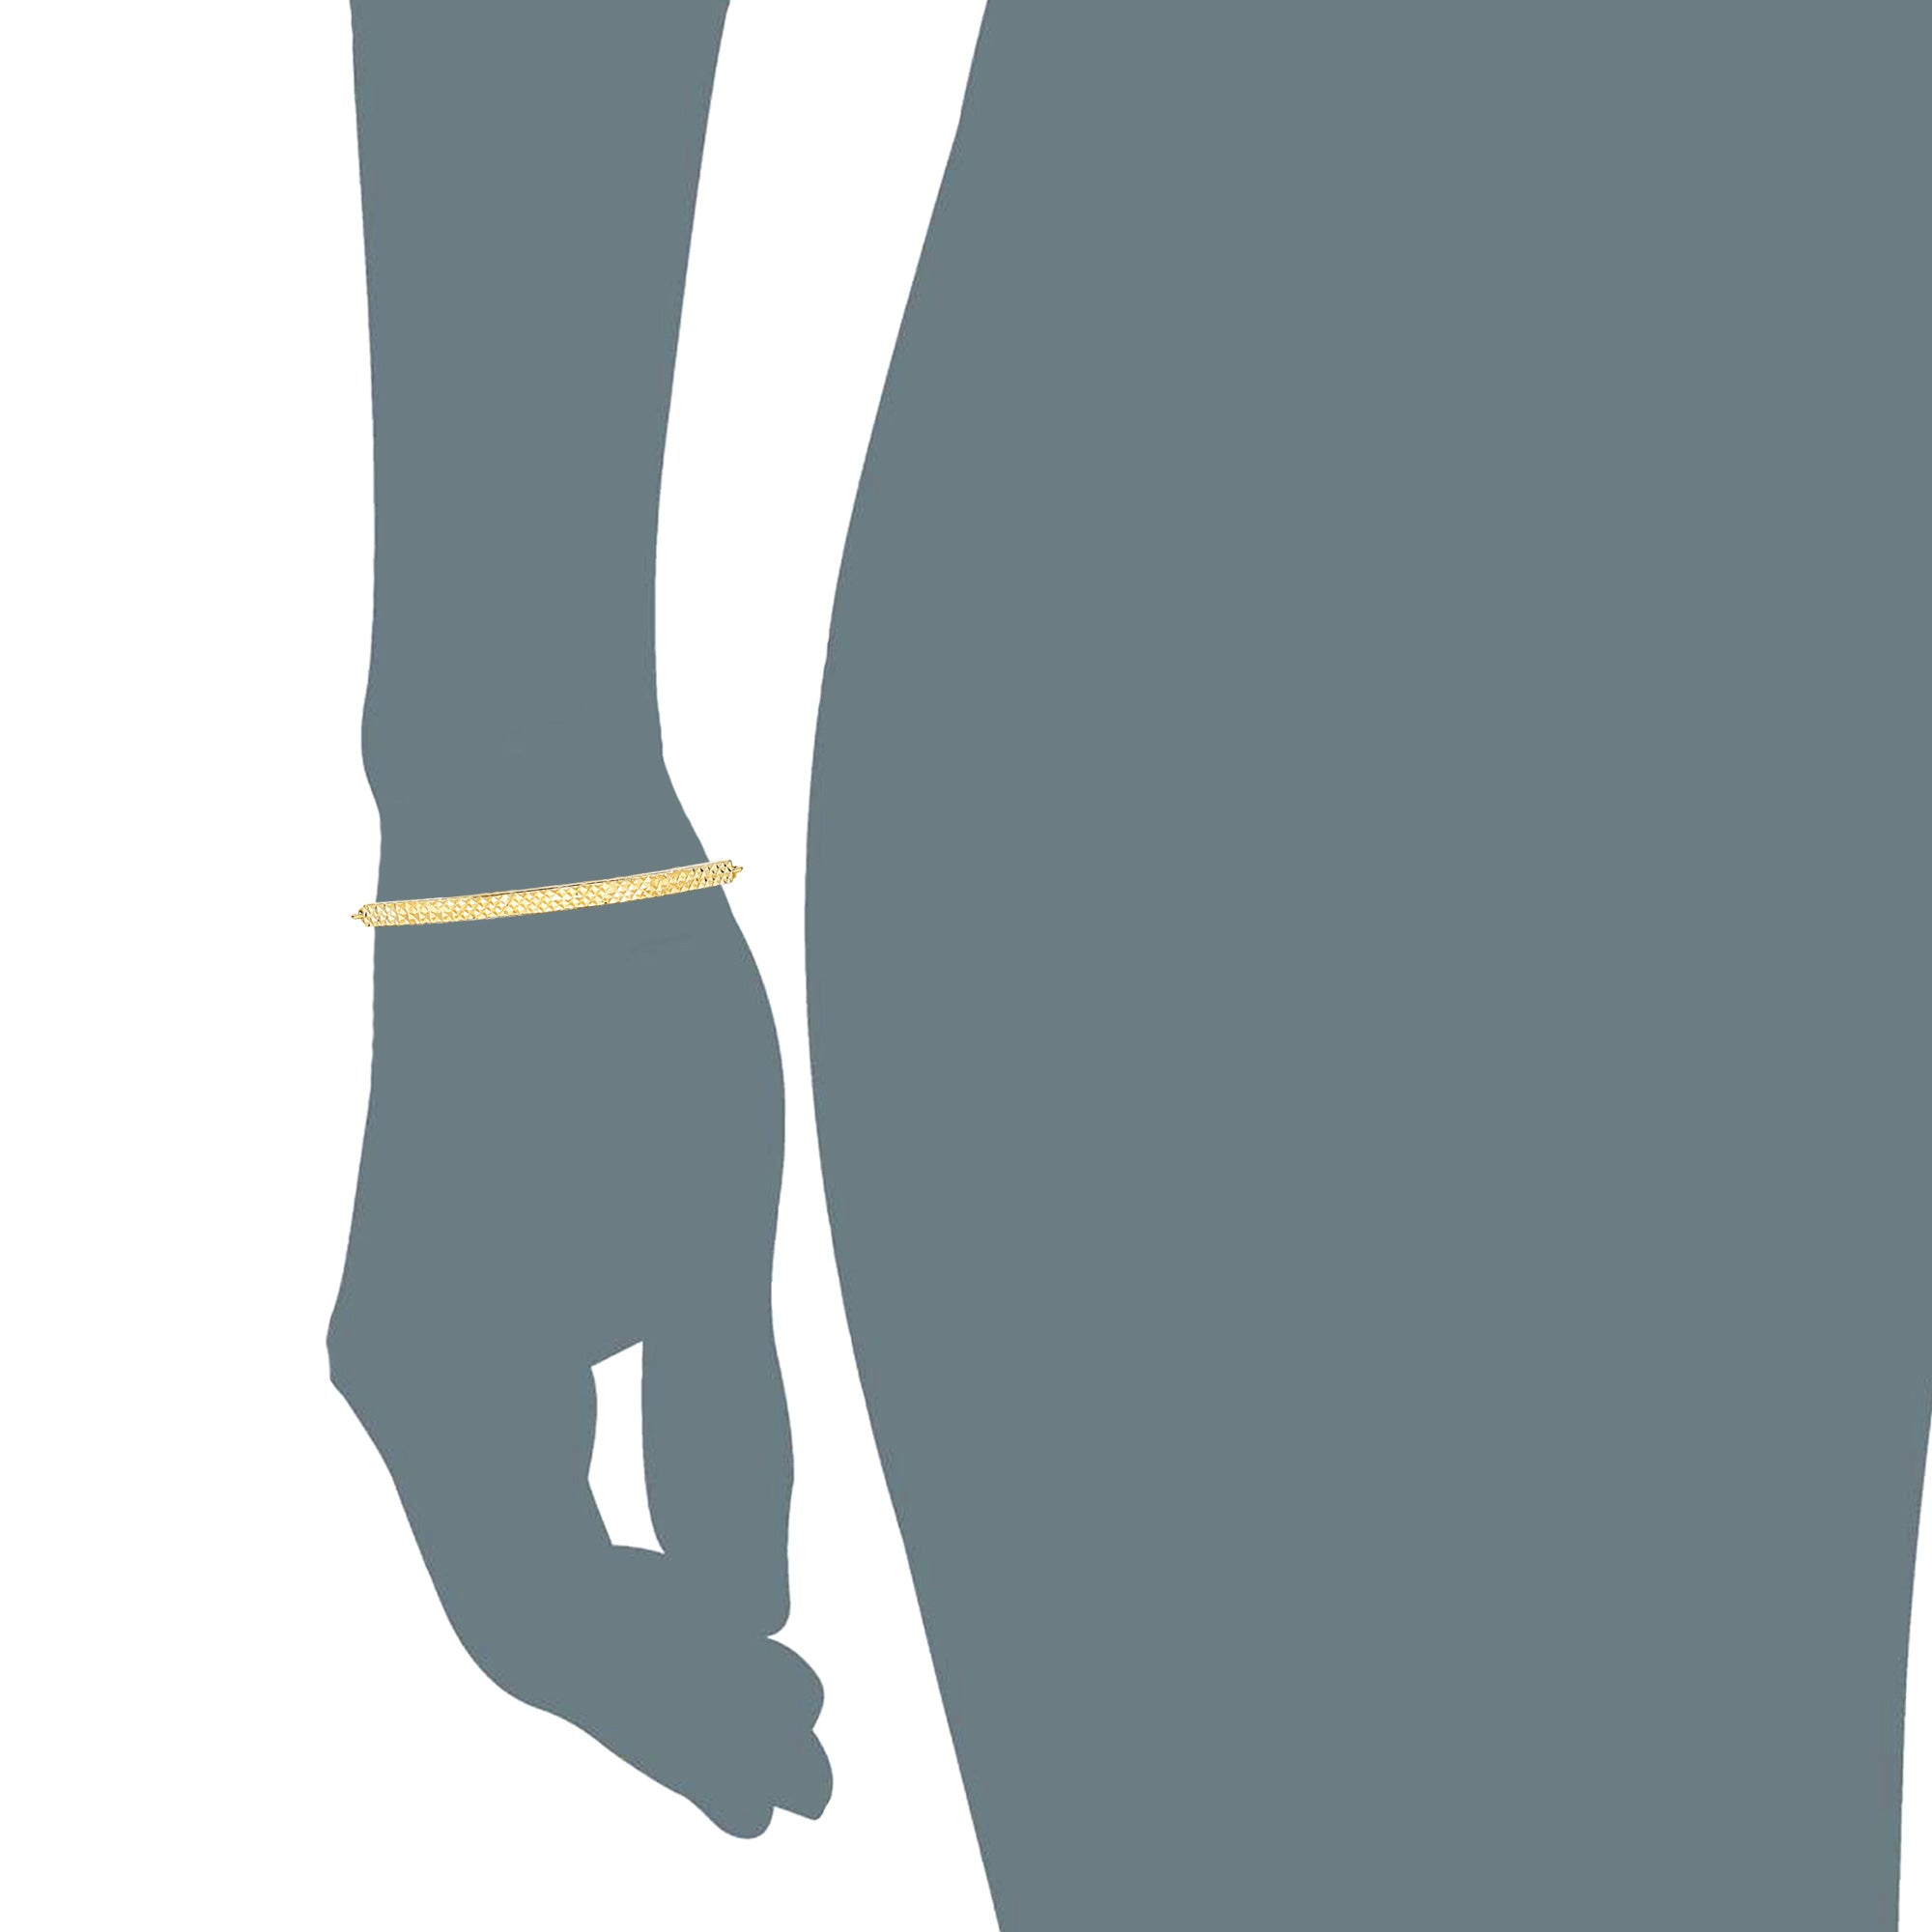 Elemento a barra curva con taglio a diamante in oro giallo 14 carati ancorato su bracciale regolabile con catena a scatola, gioielleria raffinata da 9,25" per uomini e donne